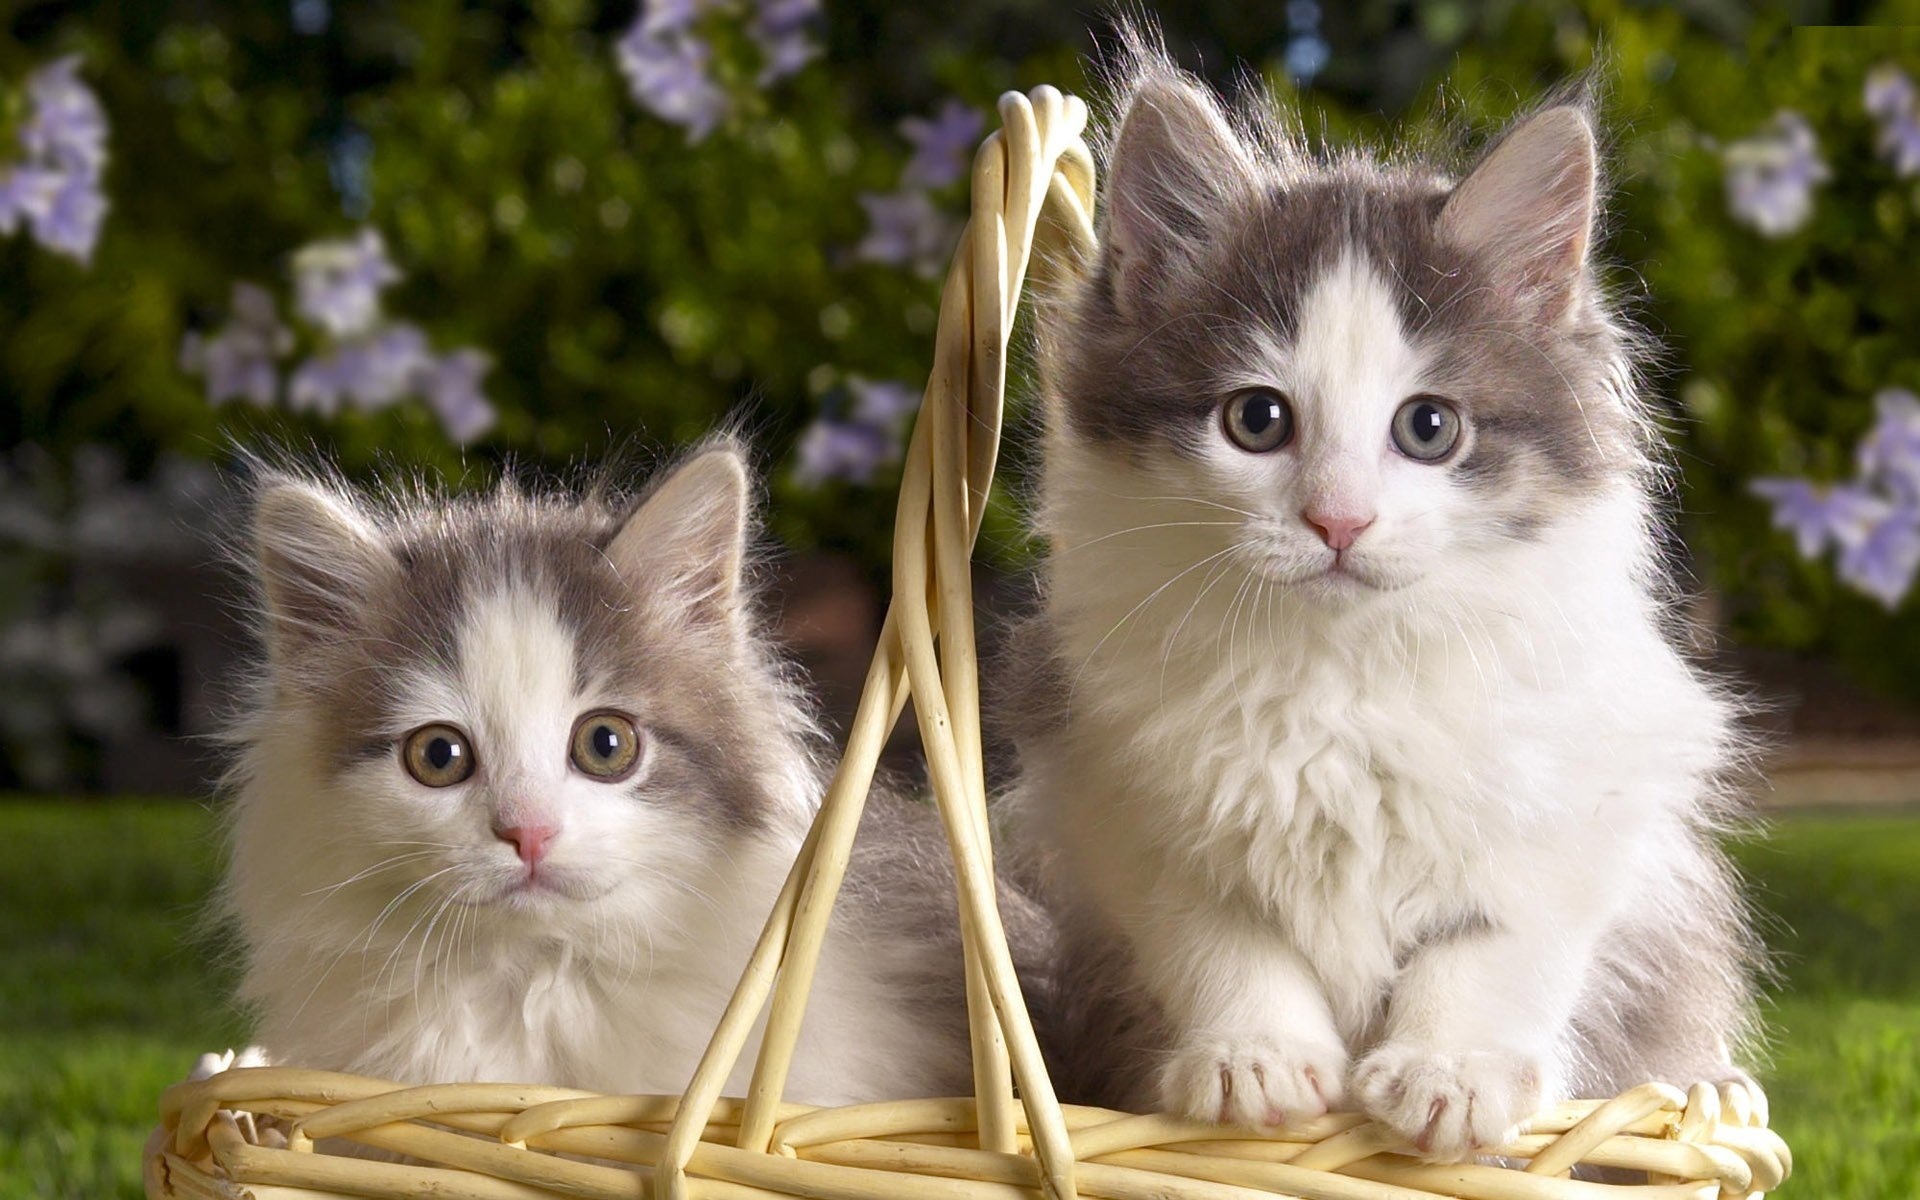 Скачать обои бесплатно Животные, Кошка, Кошки картинка на рабочий стол ПК